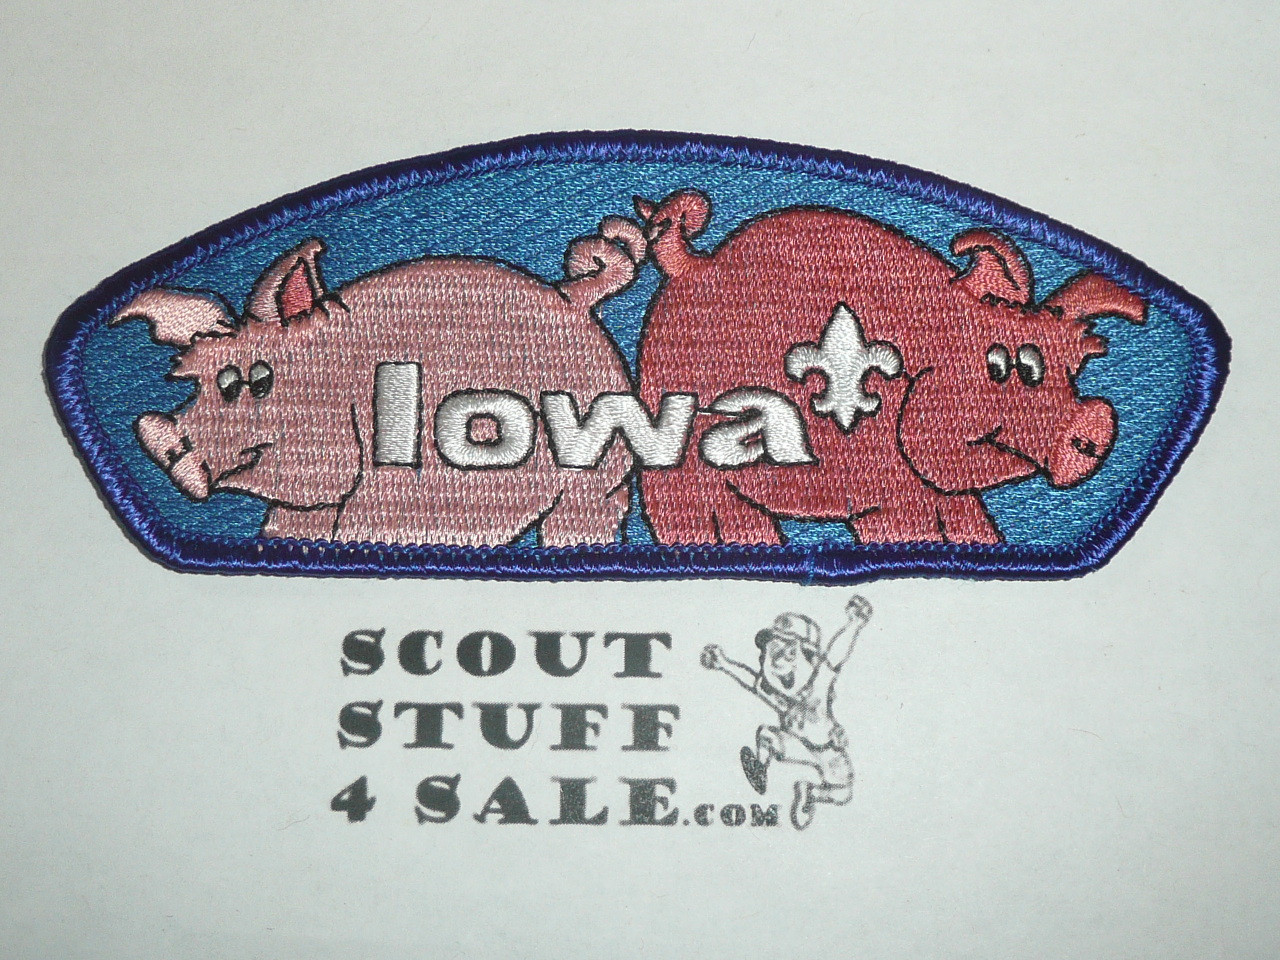 Mid-Iowa Council sa10 CSP - Scout